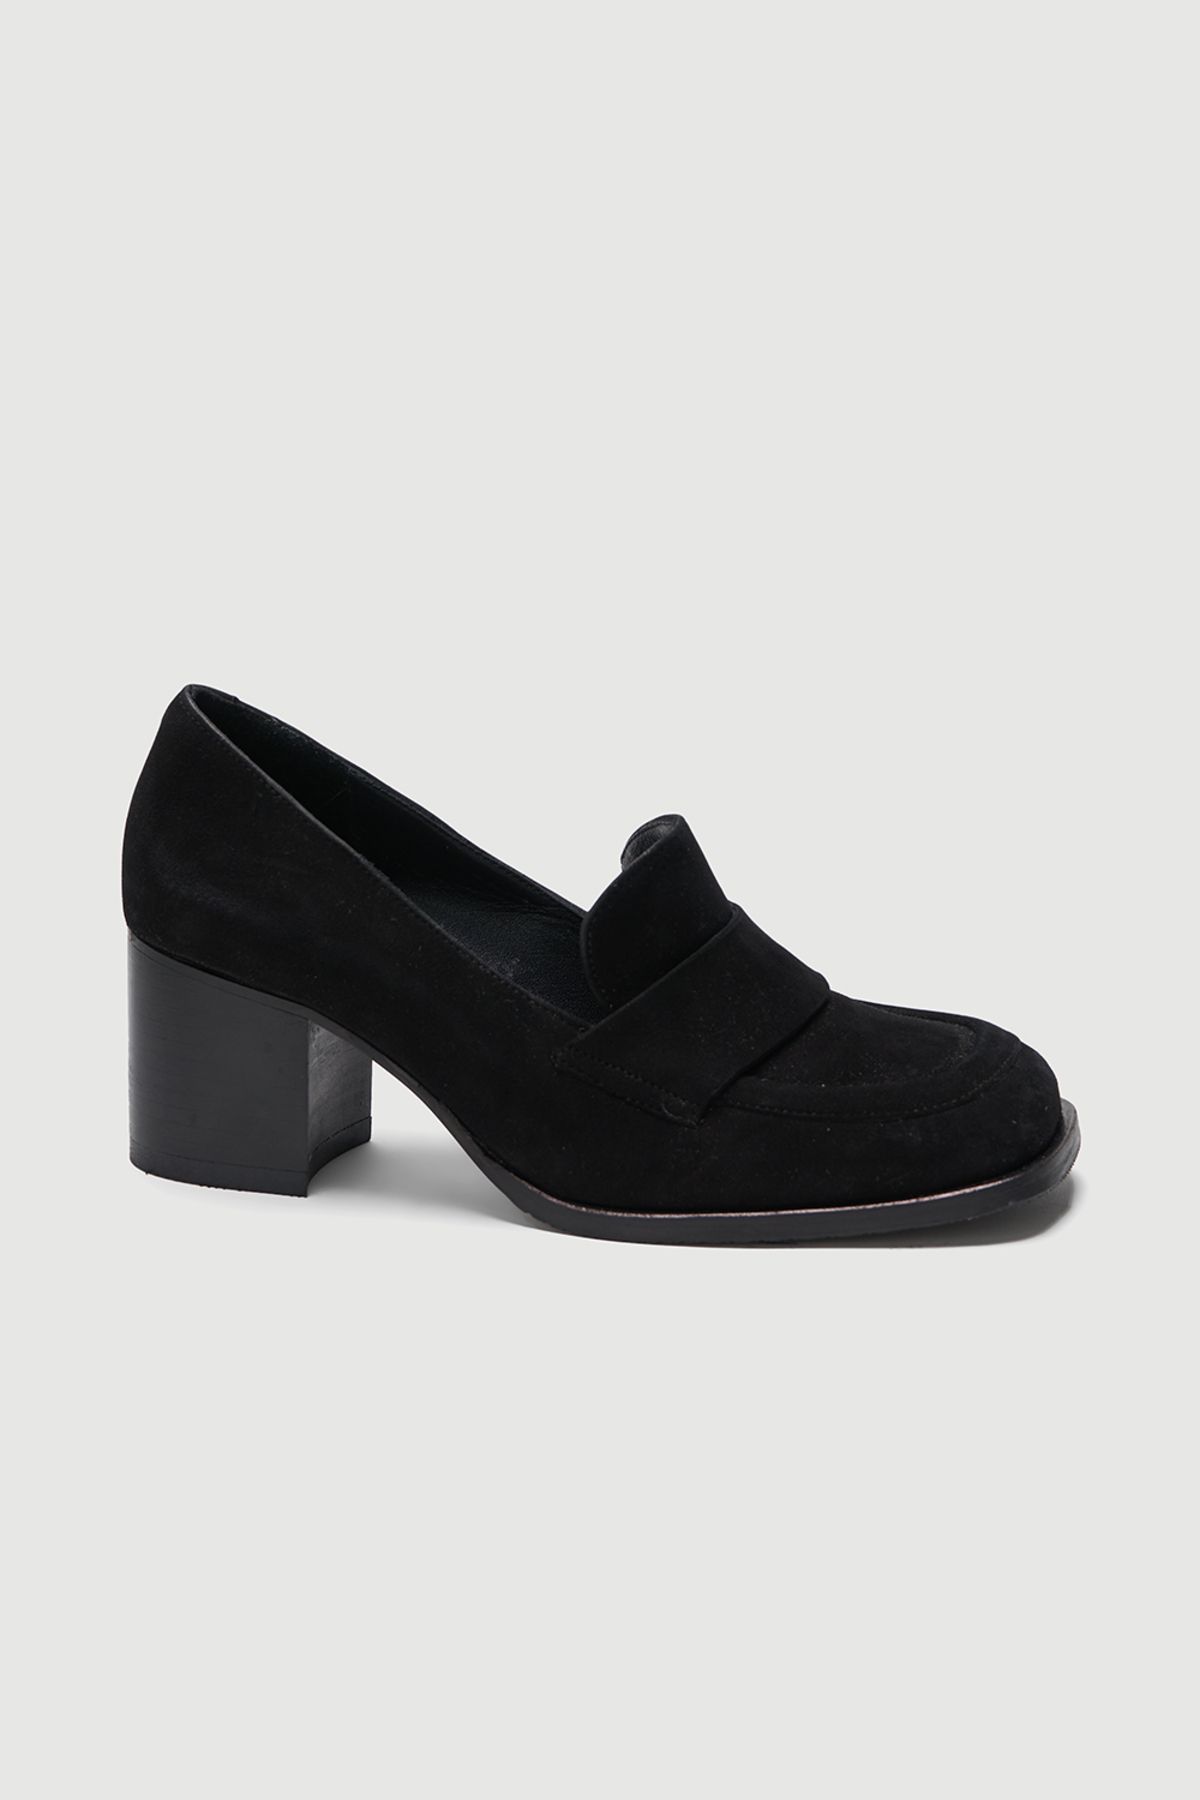 Perspective Siyah Renk Kalın Topuklu Süet Kadın Ayakkabı